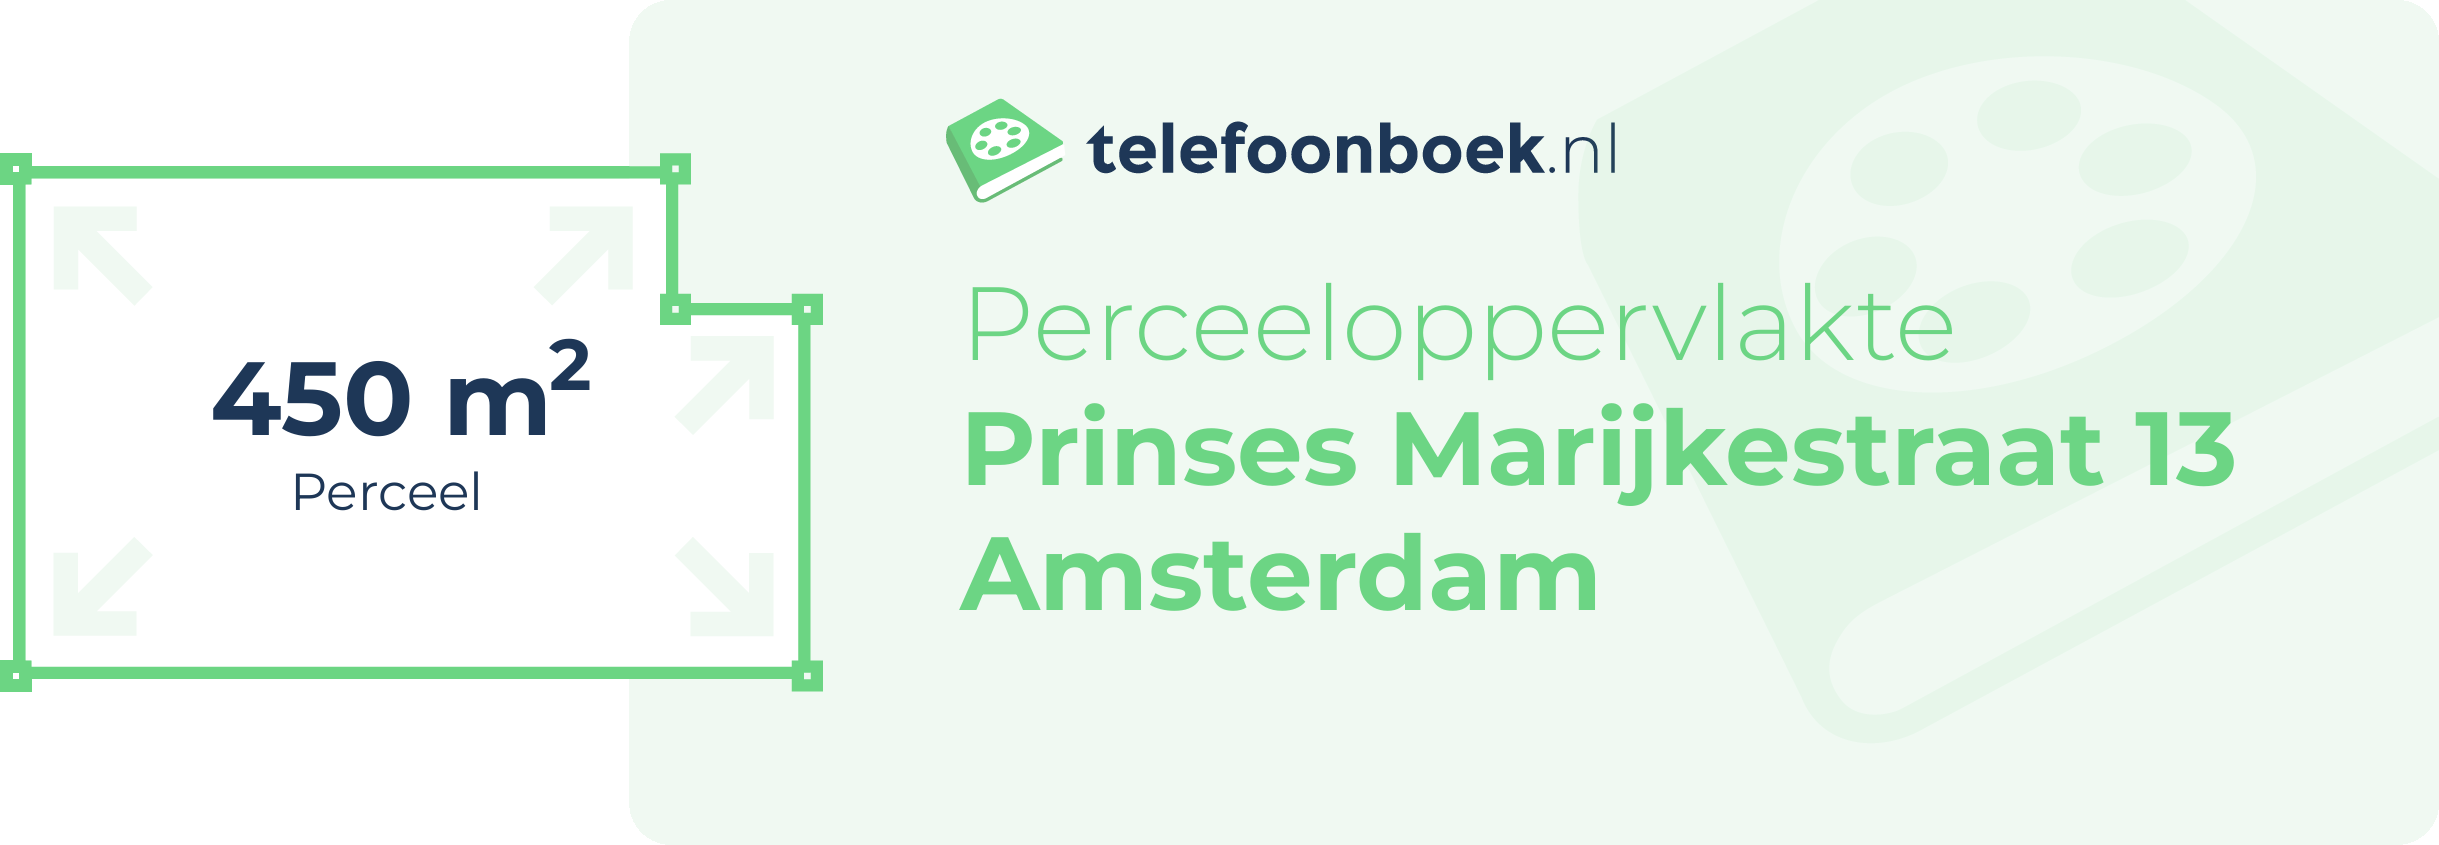 Perceeloppervlakte Prinses Marijkestraat 13 Amsterdam